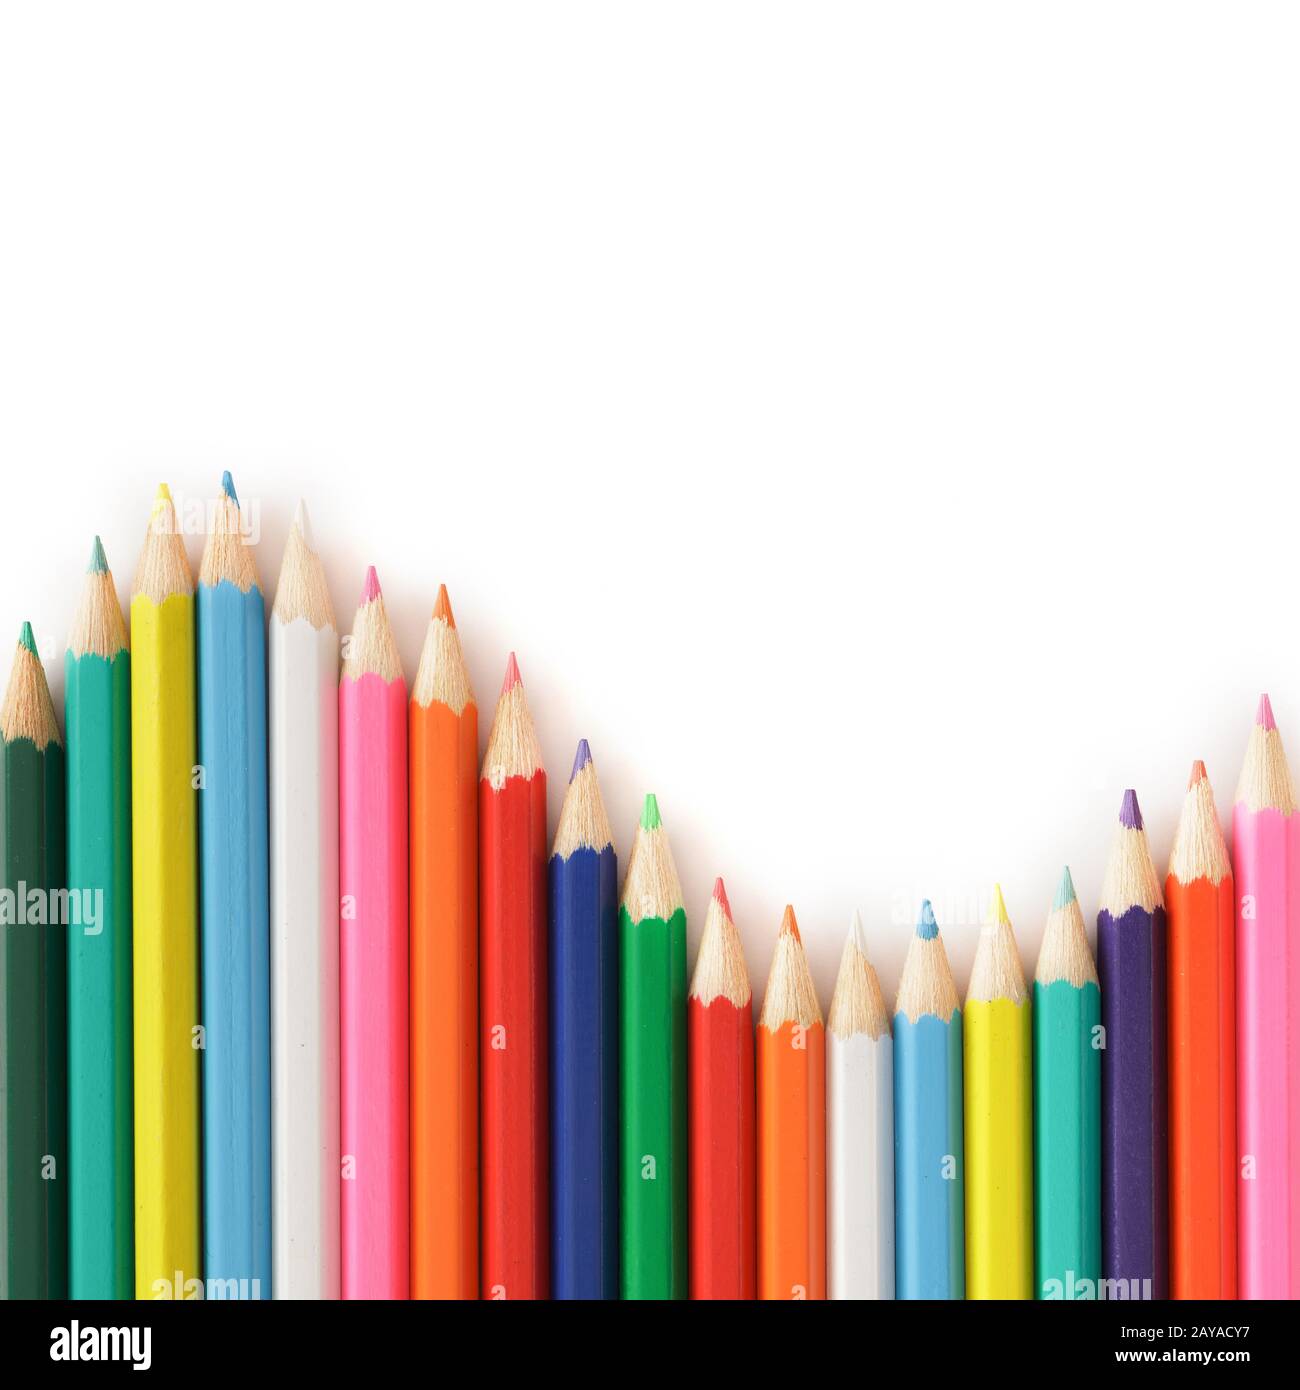 Collezione Di Matite A Colori Elementi Di Decorazione Vettoriale Arcobaleno  Per Bambini O Design Scolastico - Immagini vettoriali stock e altre  immagini di Arcobaleno - iStock